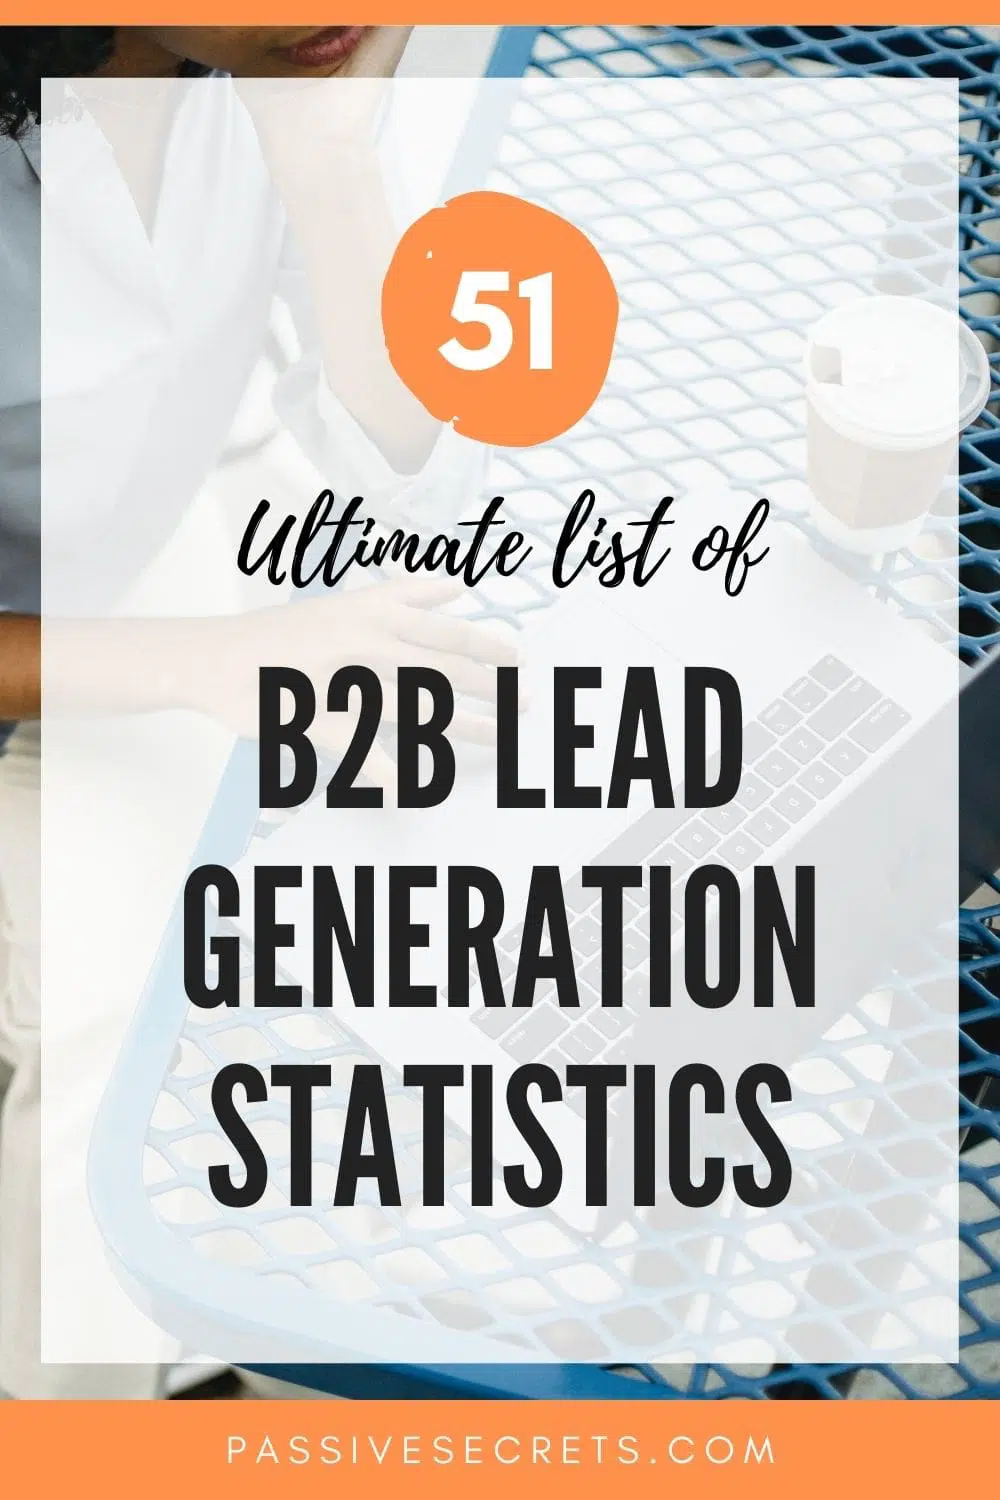 b2b lead generation marketing statistics passive secrets